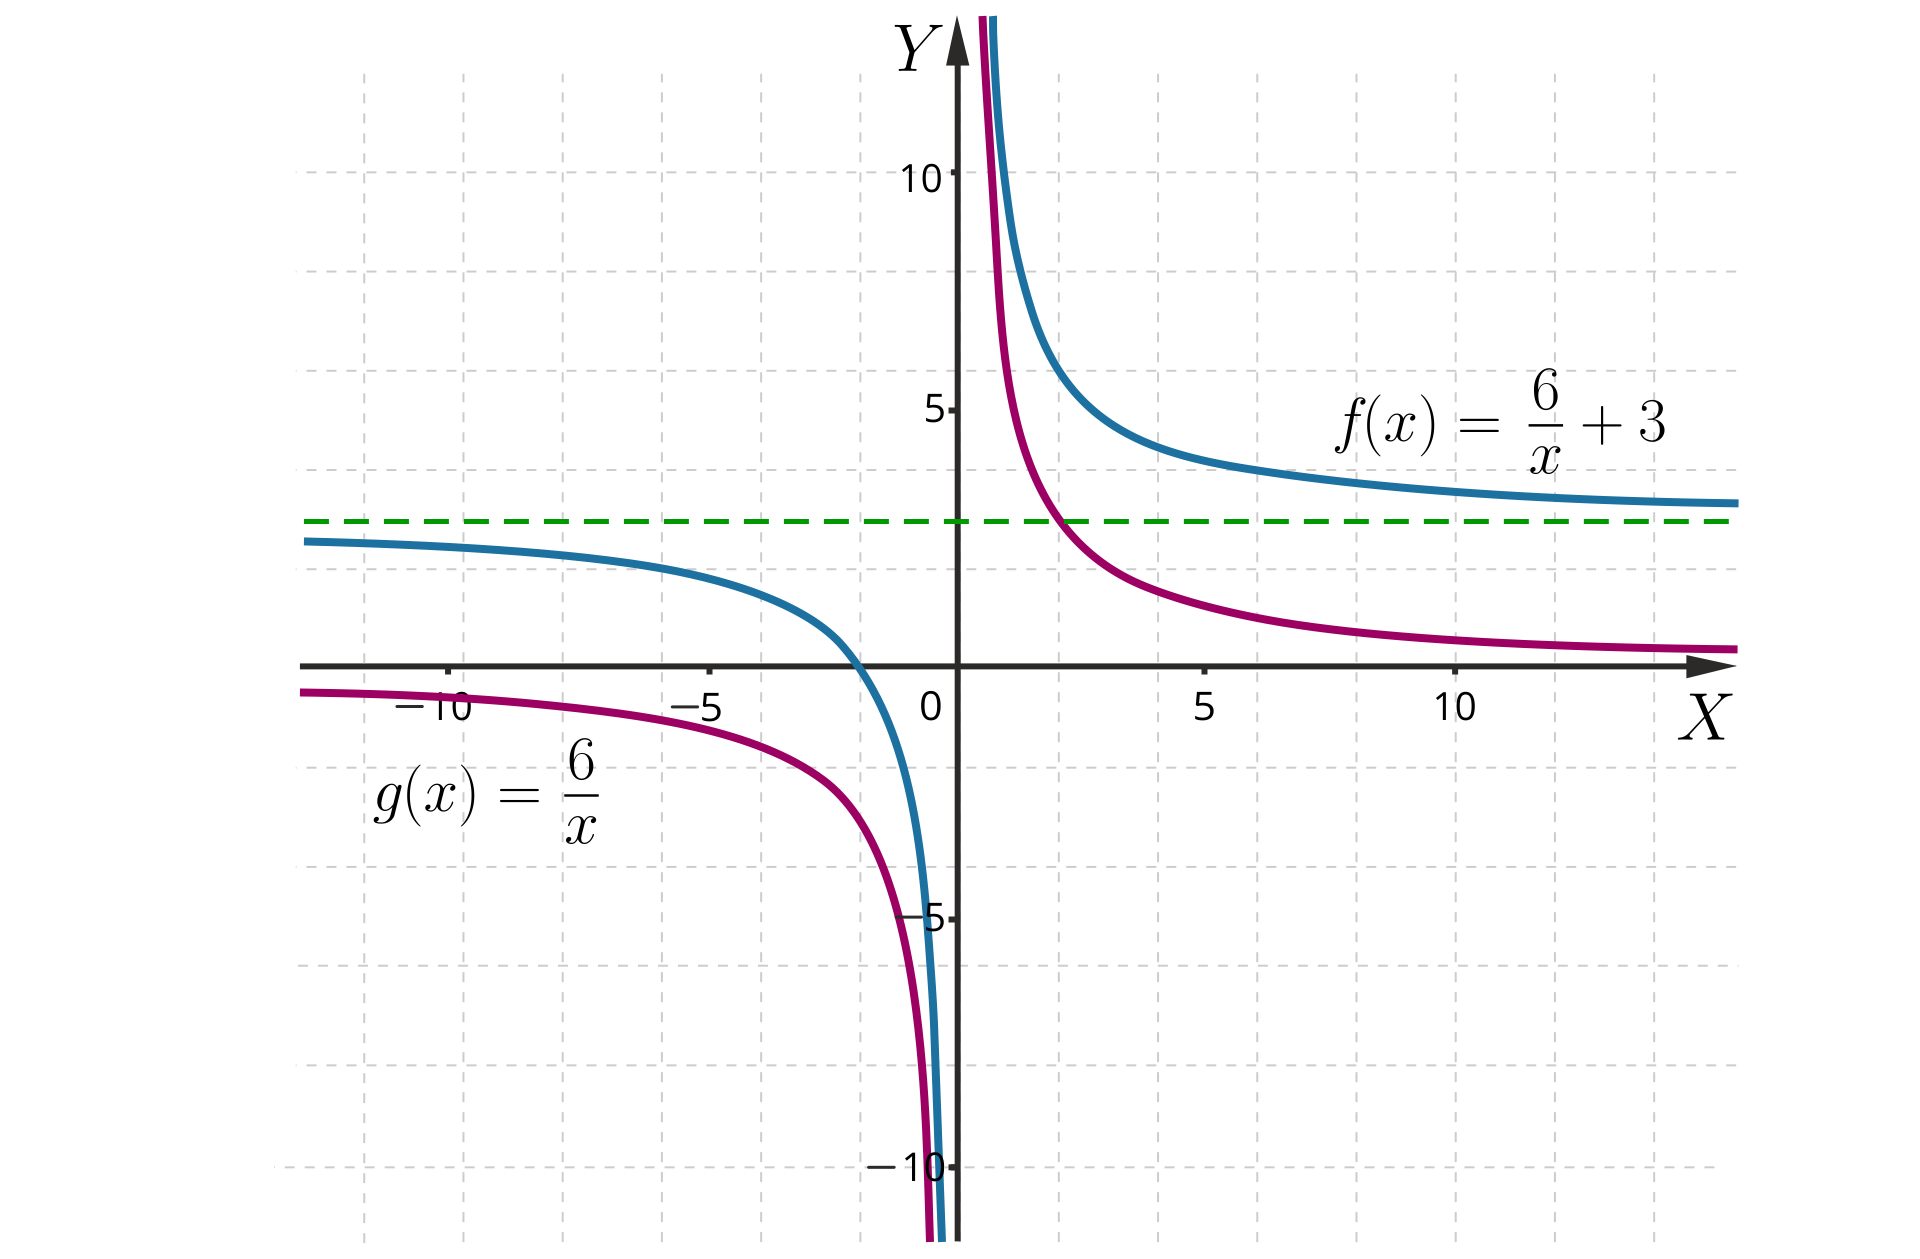 Na ilustracji znajduje się układ współrzędnych z zaznaczonymi dwoma wykresami funkcji. Pierwszy wykres to wykres funkcji g od x równa się początek ułamka sześć, mianownik x koniec ułamka. Jest to hiperbola, znajdująca się w pierwszej i trzeciej ćwiartce układu, która posiada asymptotę pionową o równaniu x=0 oraz asymptotę poziomą o równaniu y=0. Drugi wykres, to wykres funkcji fx=6x+3. Jest to hiperbola o takim samym kształcie, która posiada asymptotę pionową o równaniu x=0 oraz asymptotę poziomą o równaniu y=trzy. Wykres funkcji f jest przesunięty względem wykresu funkcji g o trzy jednostki w górę.